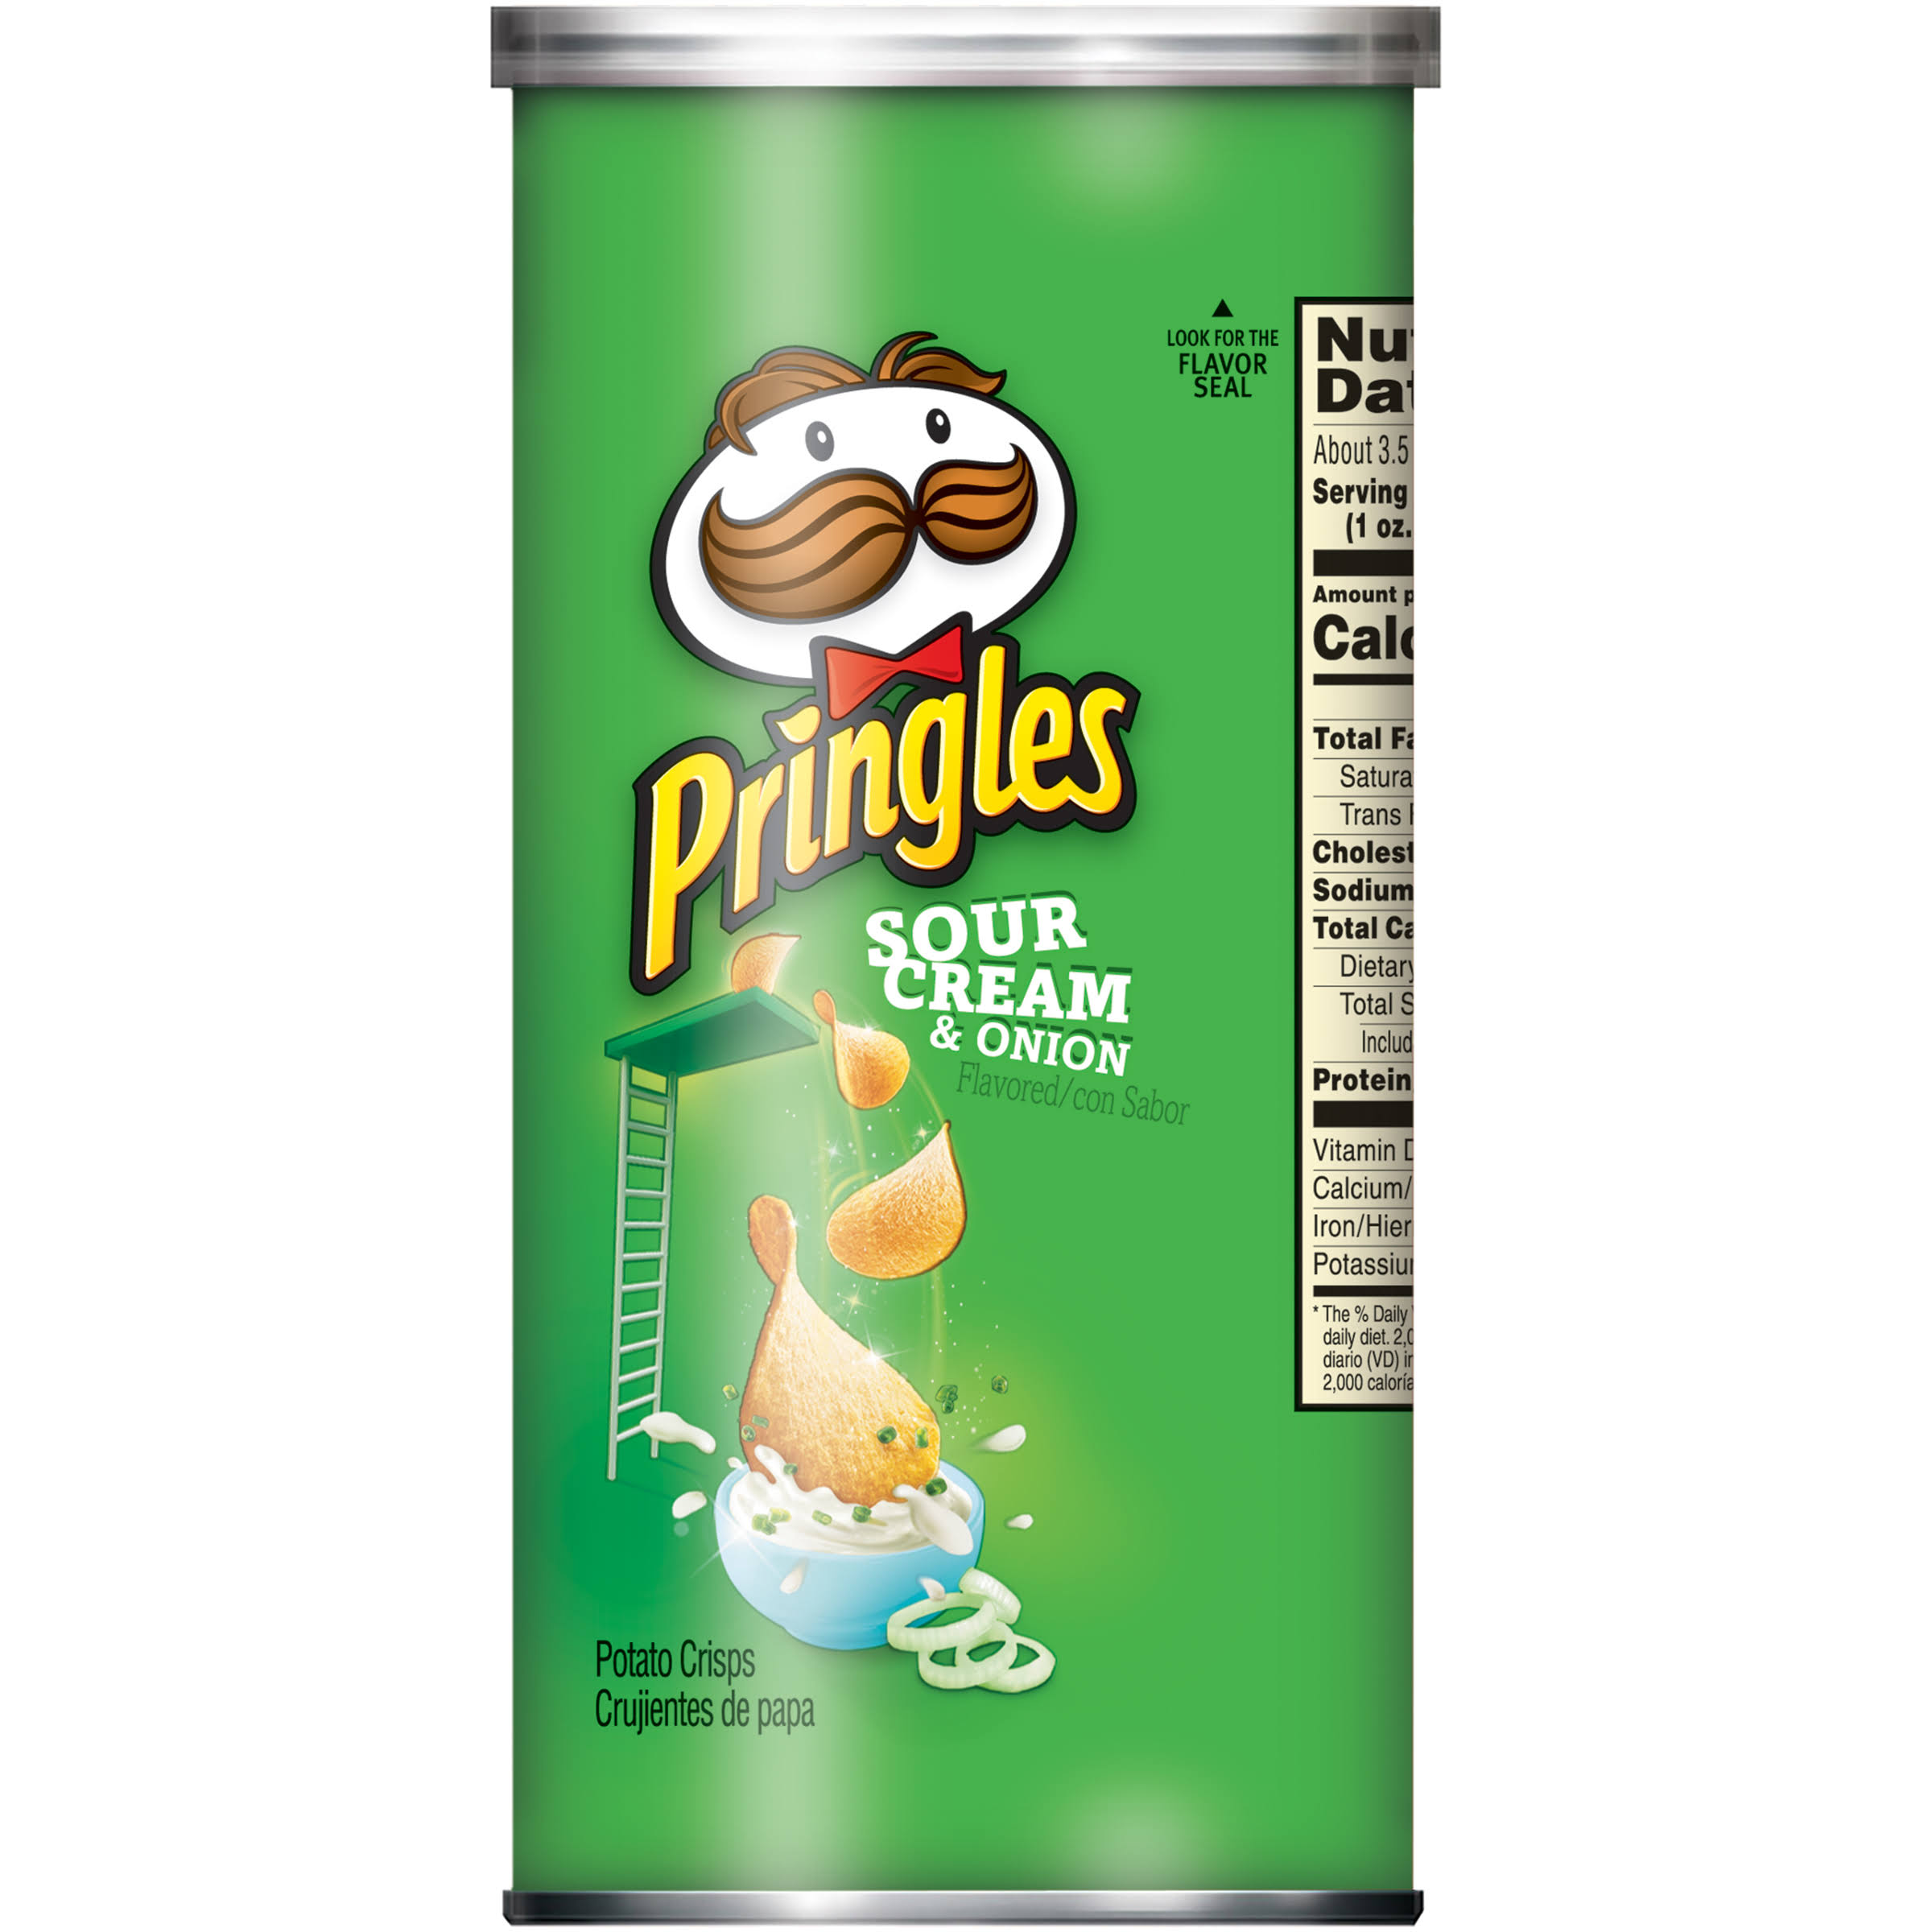 Pringles Potato Crisps, Sour Cream & Onion Flavored - 3.6 oz